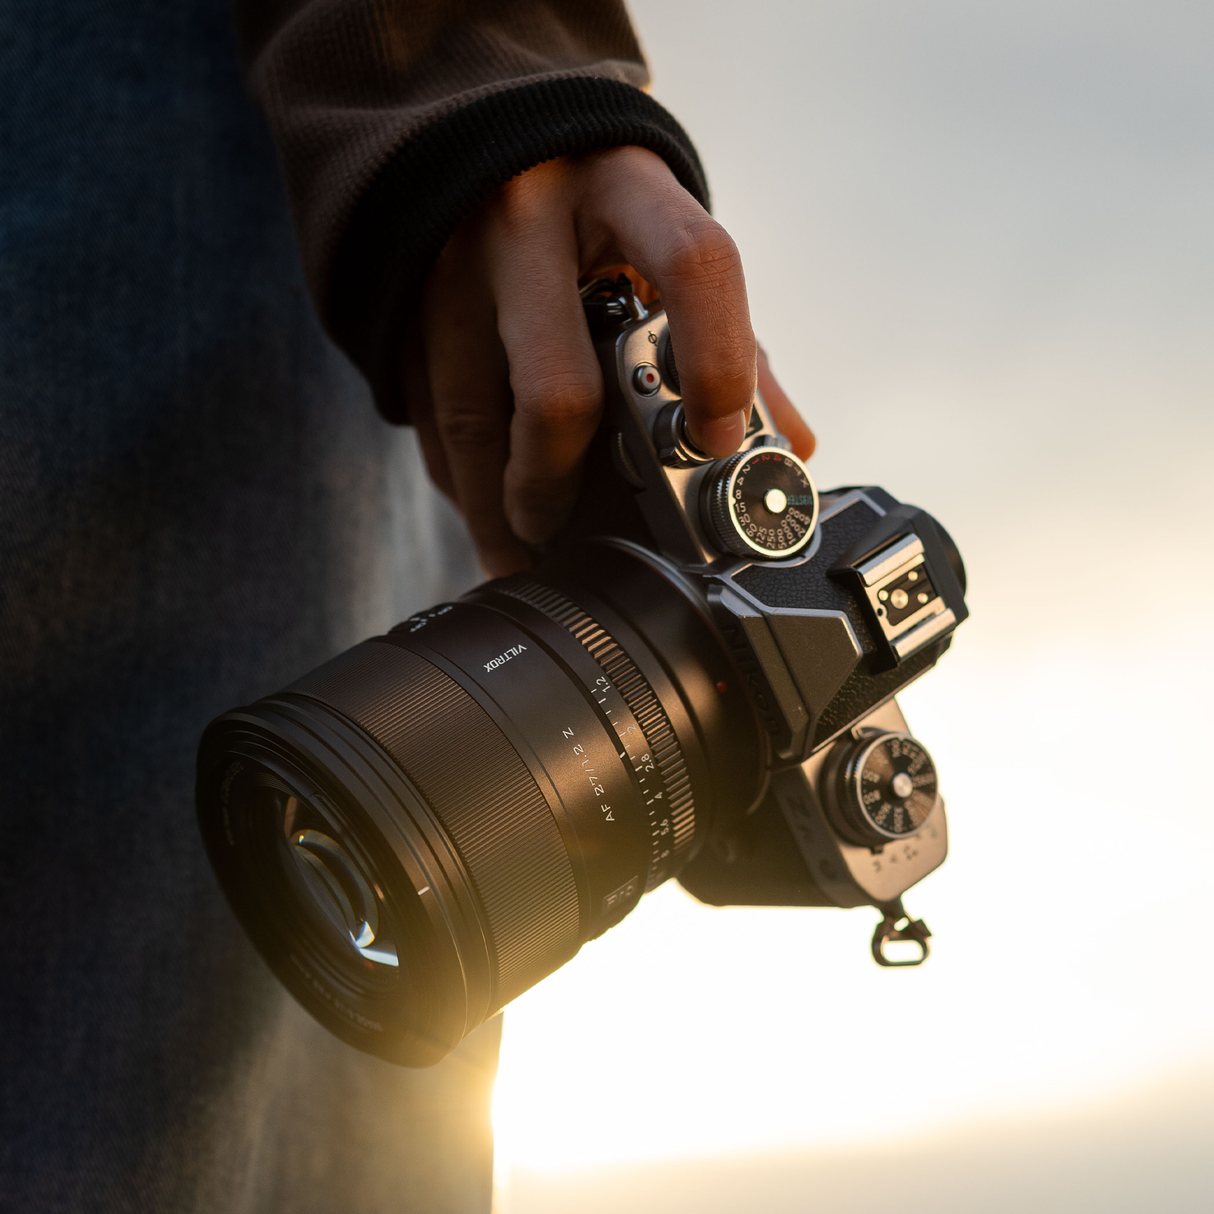 Objective AF 27 mm F/1.2 per DX for Nikon Z-Mount